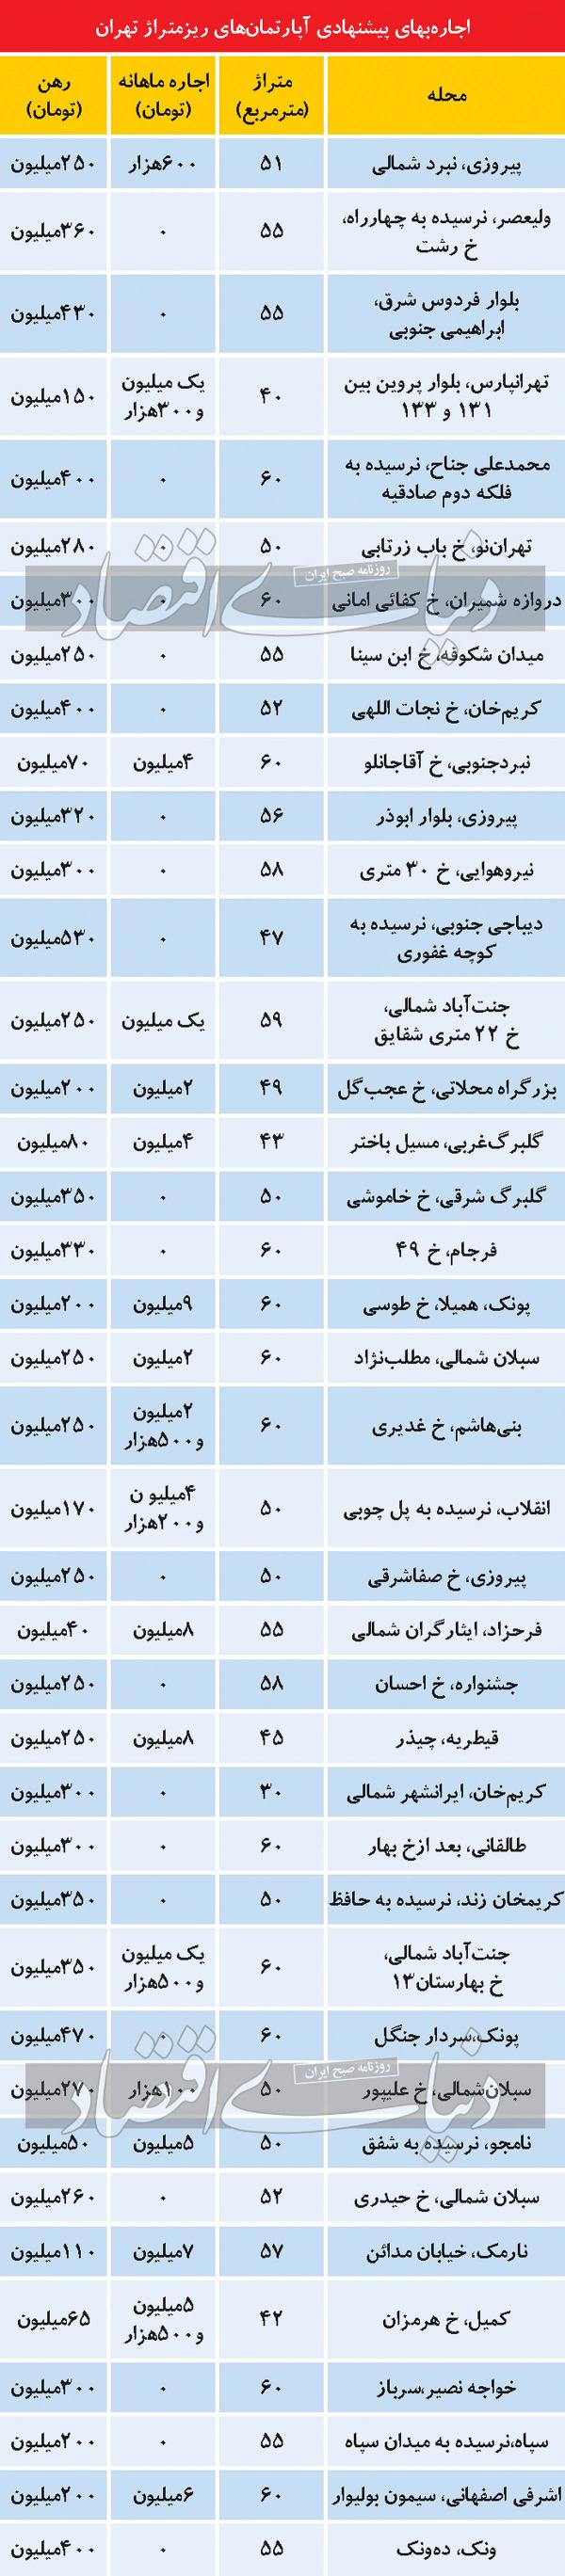 جدول قیمت اجاره در تهران,اجار 1401